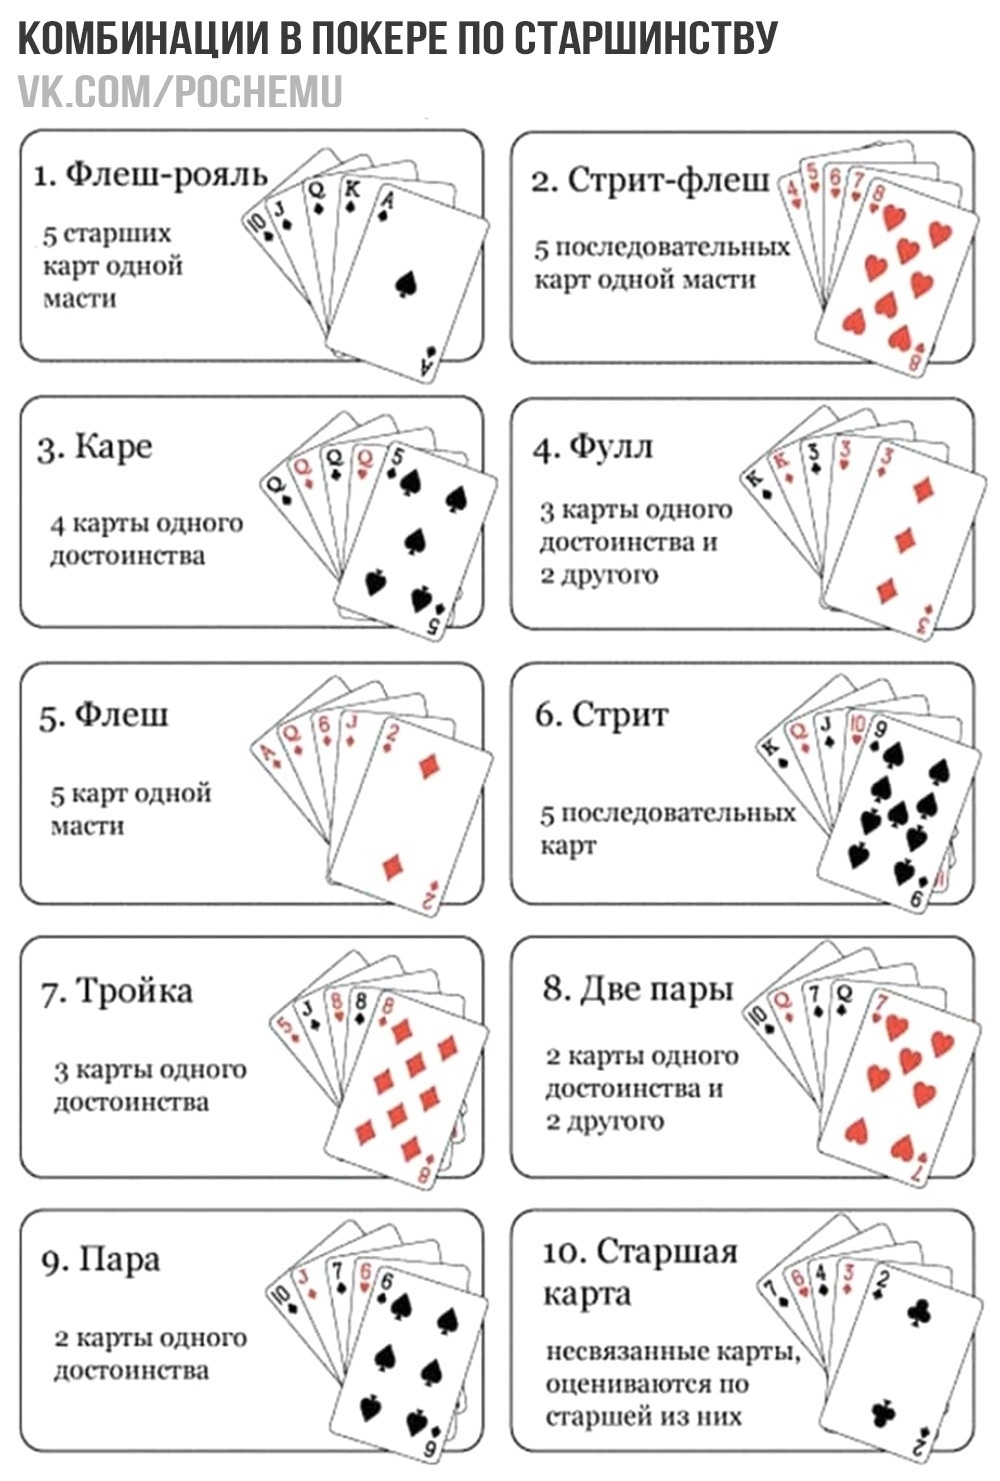 Что значат карты дурак. Игра в Покер правила для начинающих комбинации. Комбинации в покере по старшинству. Комбинации в покере 36 карт. Стрит флеш в покере комбинация.